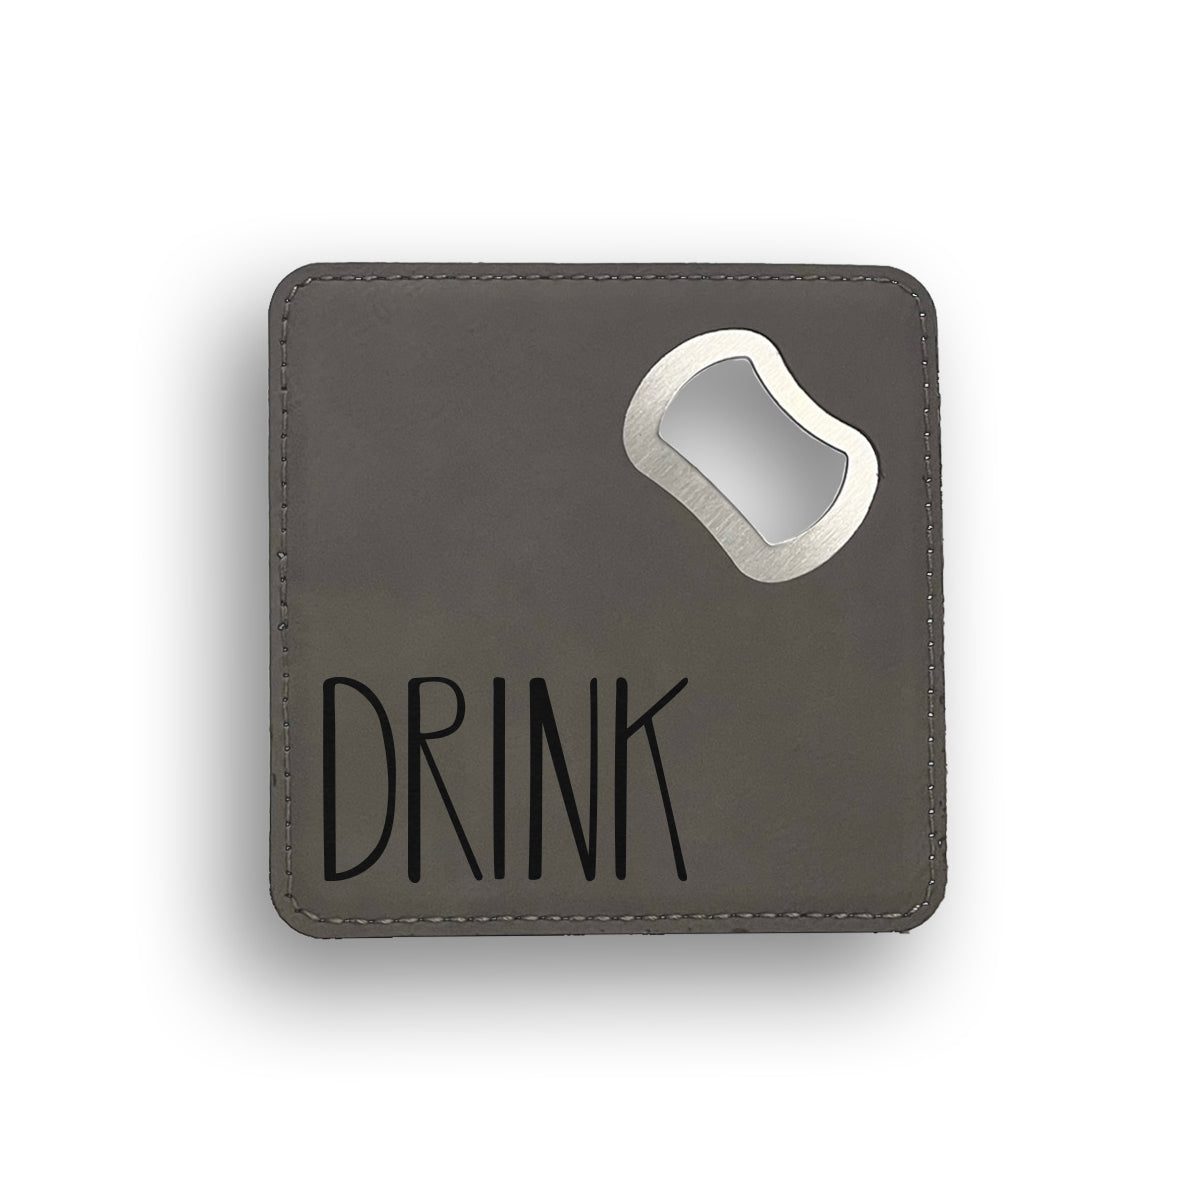 Drink Bottle Opener Coaster